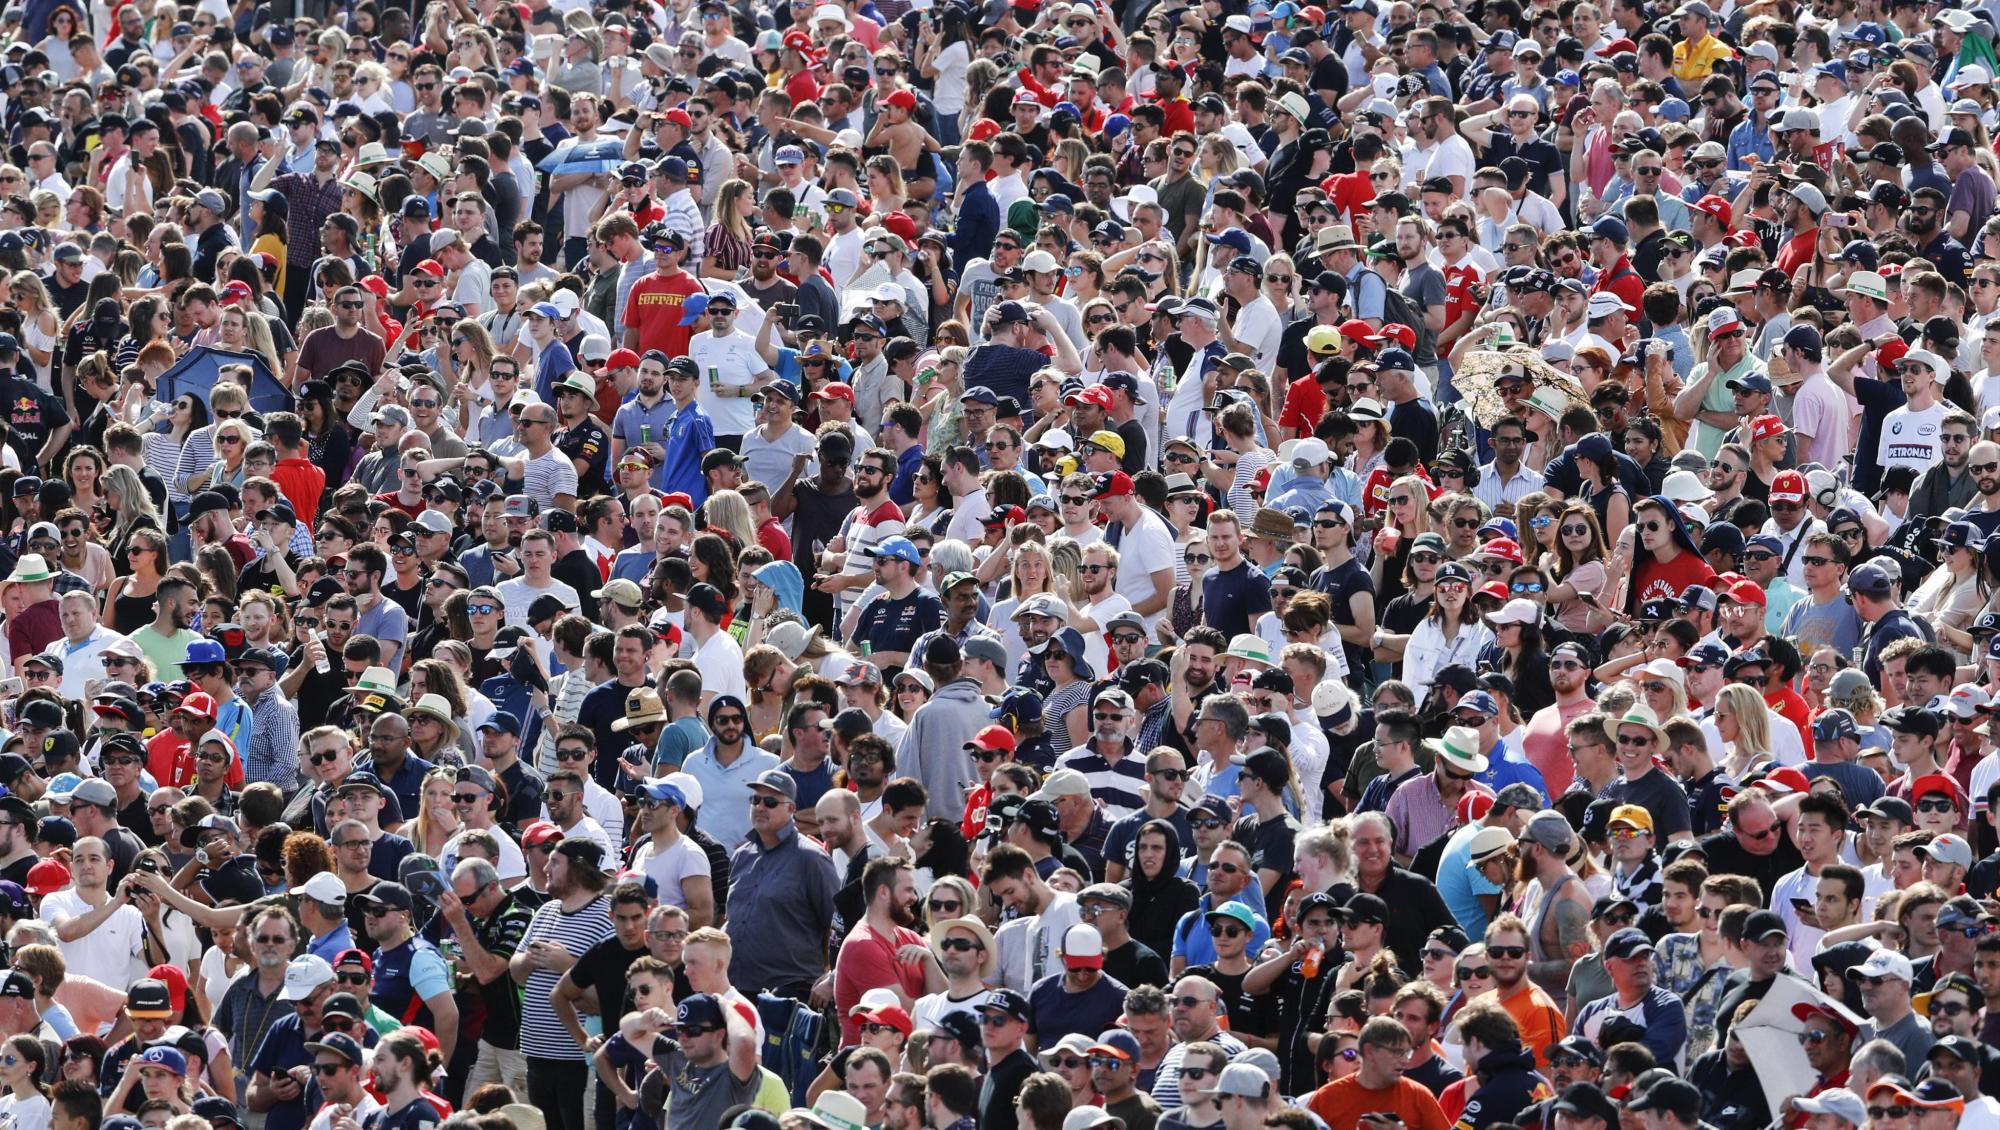 Vista general de los espectadores durante el Gran Premio de Fórmula Uno 2018 de Australia en el circuito Albert Park en Melbourne, Australia, el 25 de marzo de 2018.